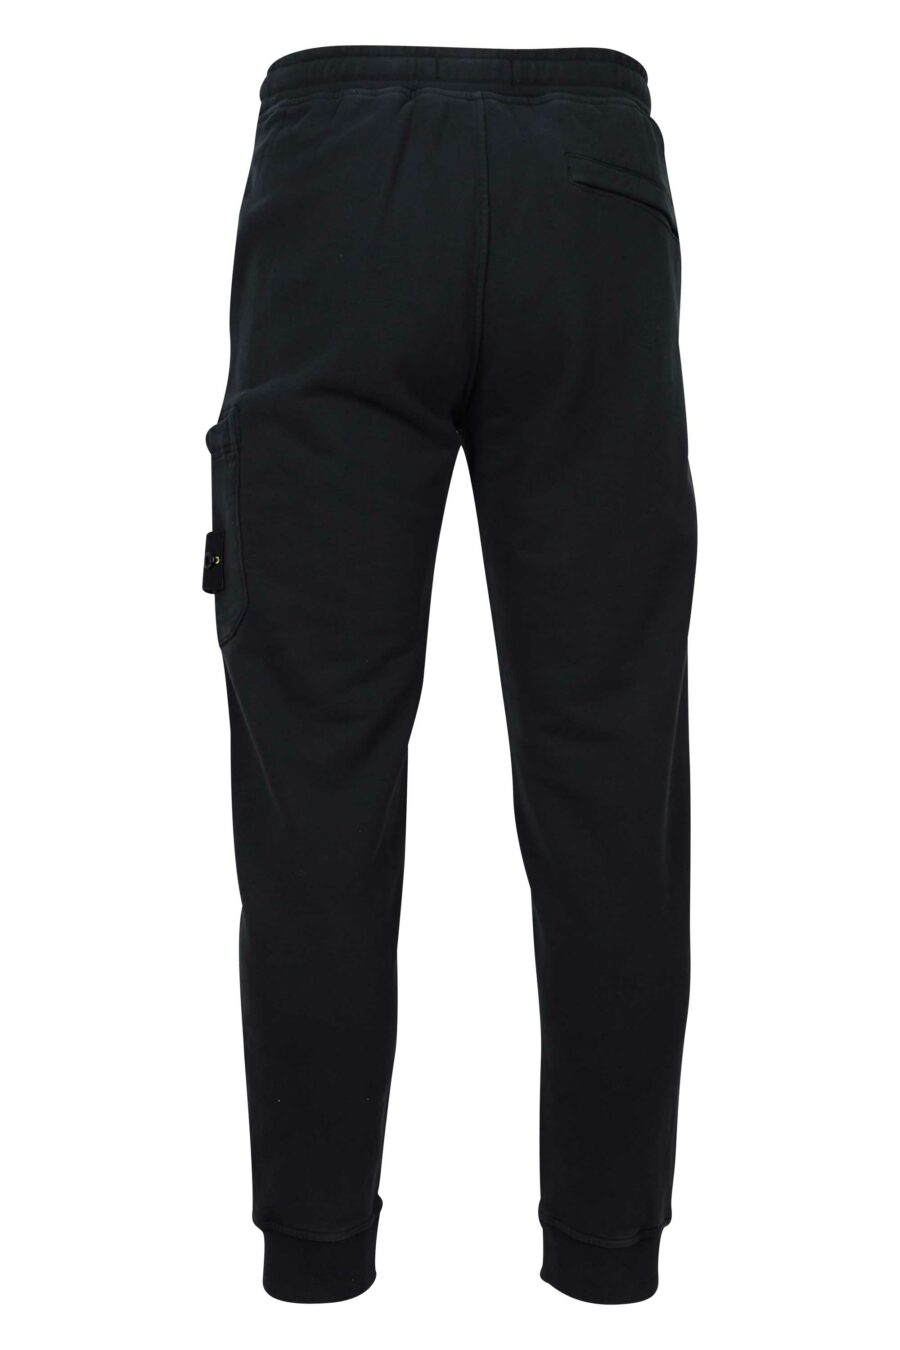 Pantalón de chándal negro con logo lateral parche - 8052572720062 2